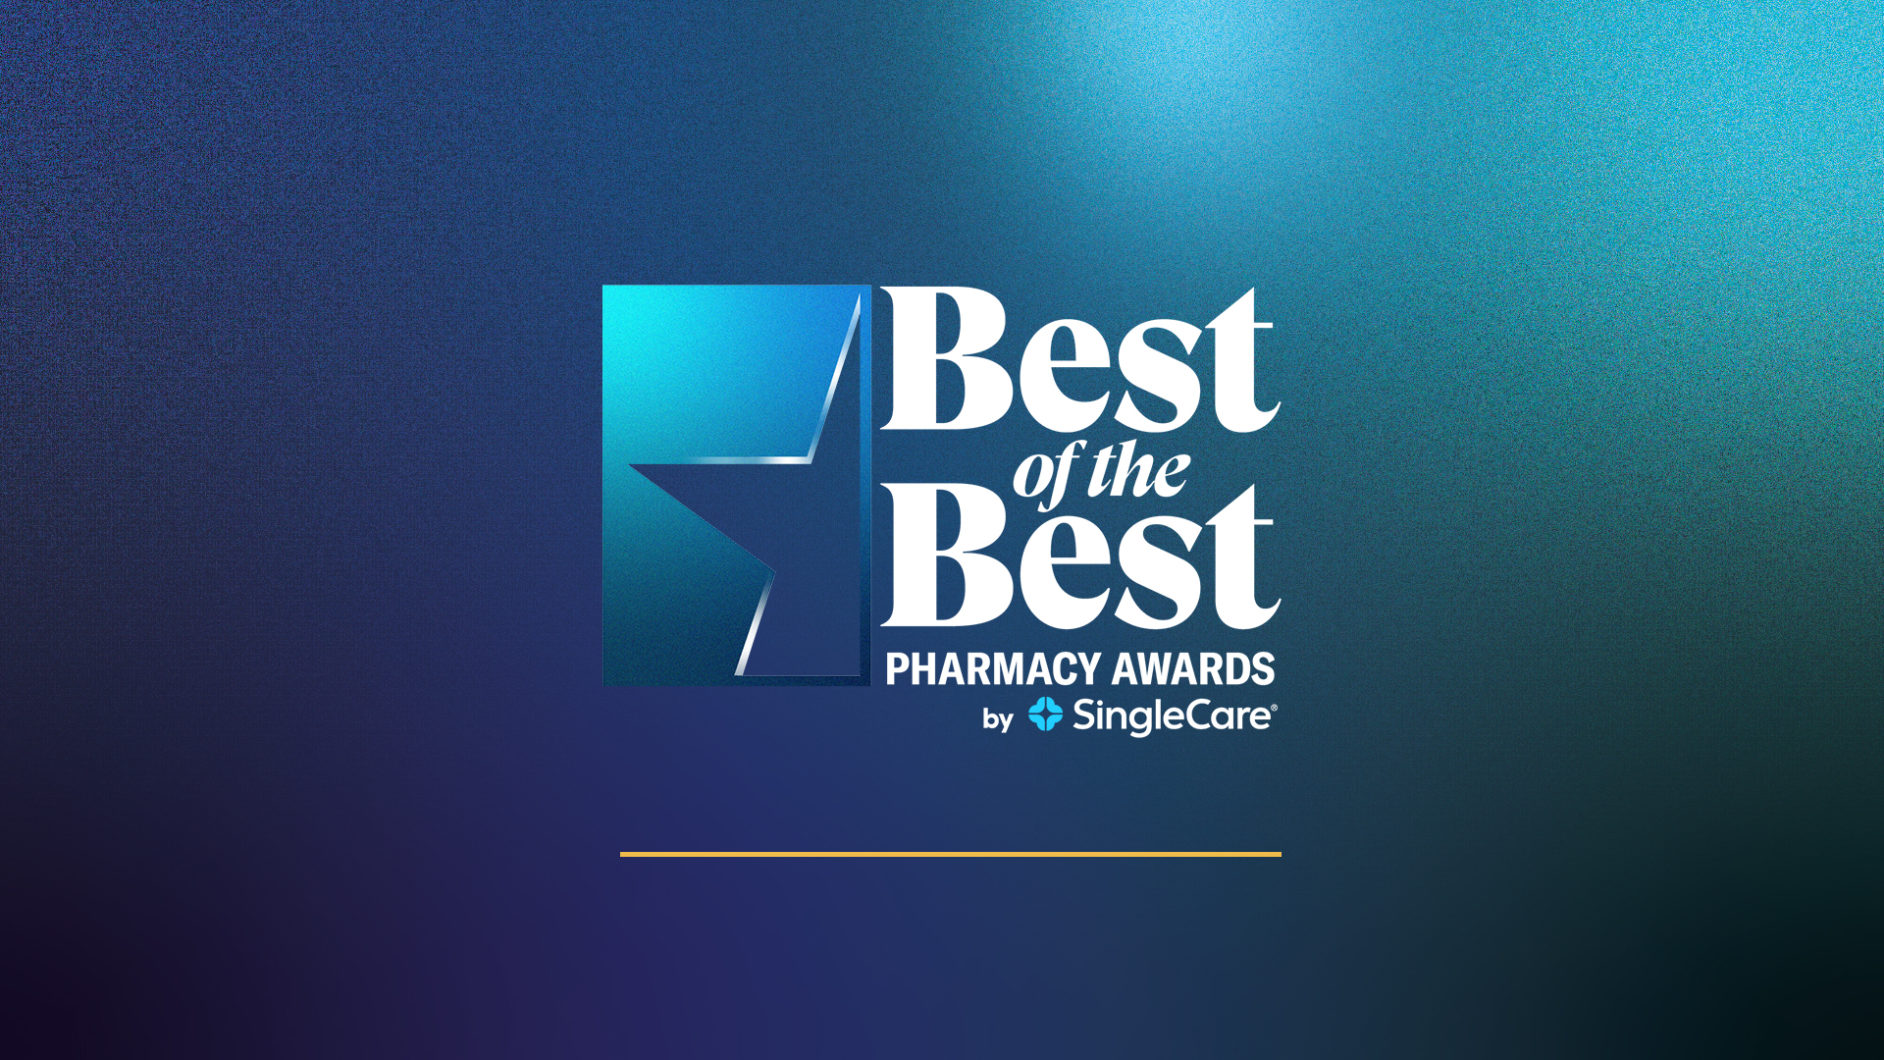 SingleCare pharmacy awards program logo